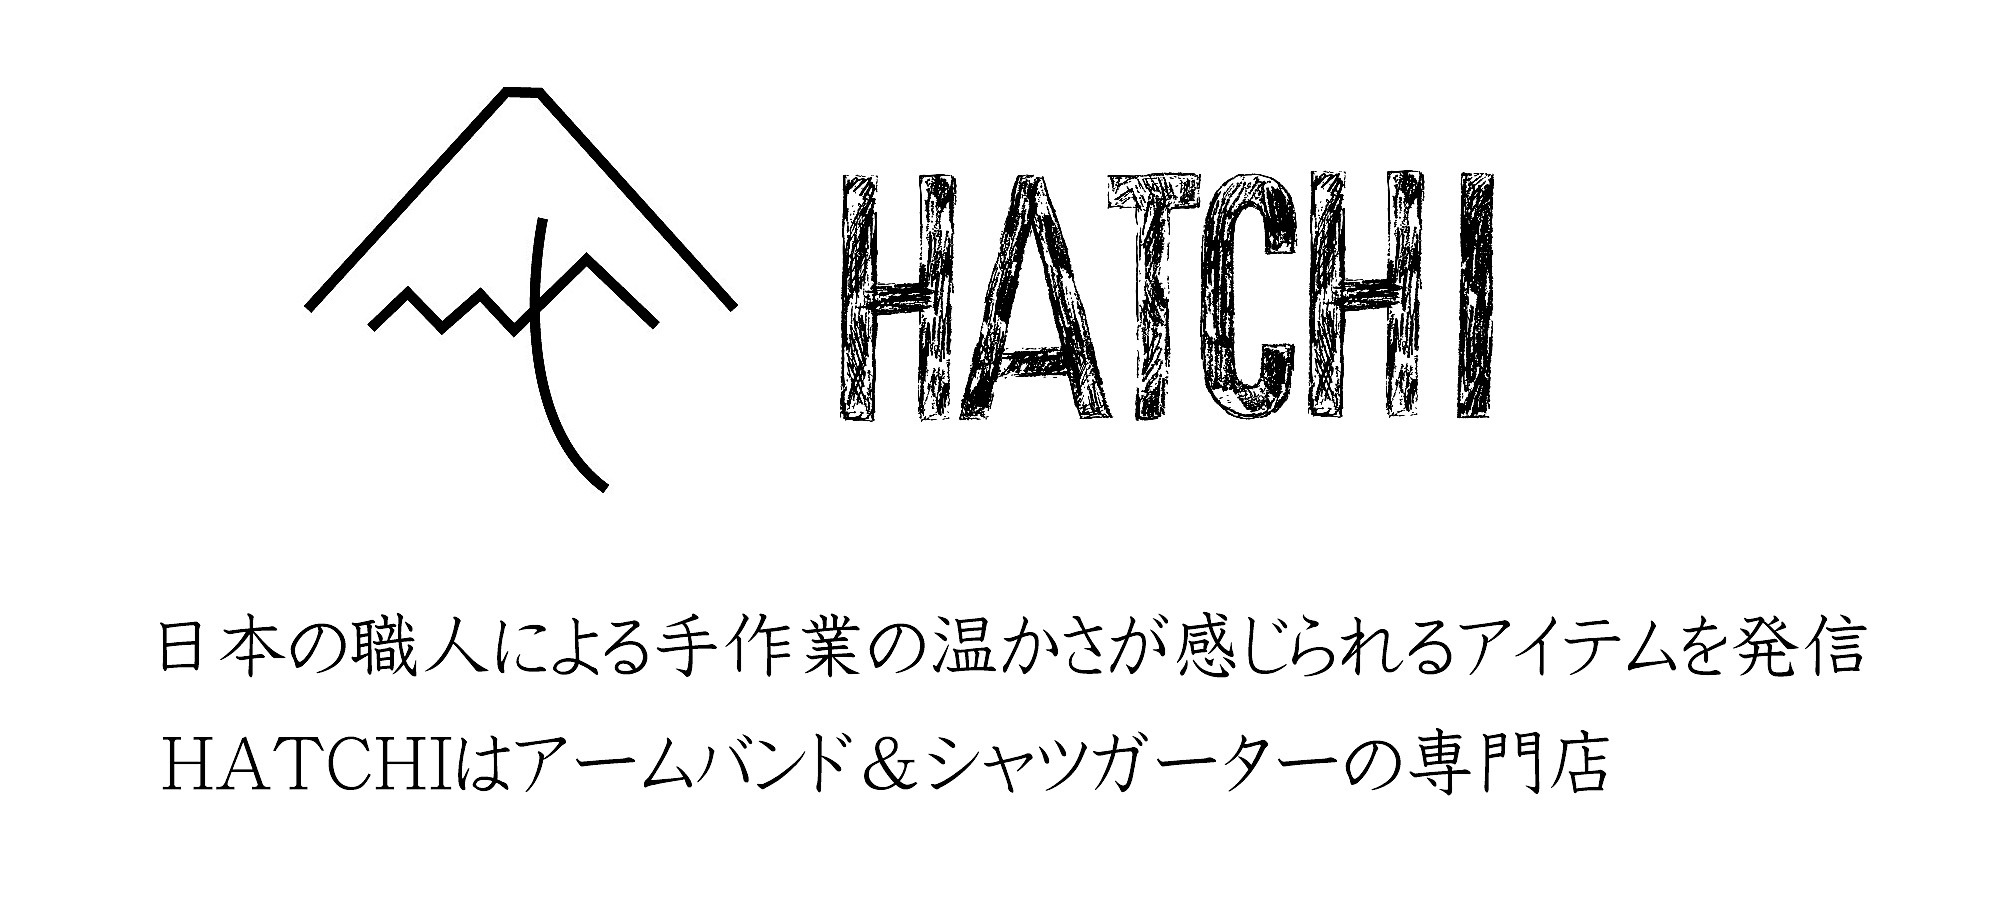 HATCHI